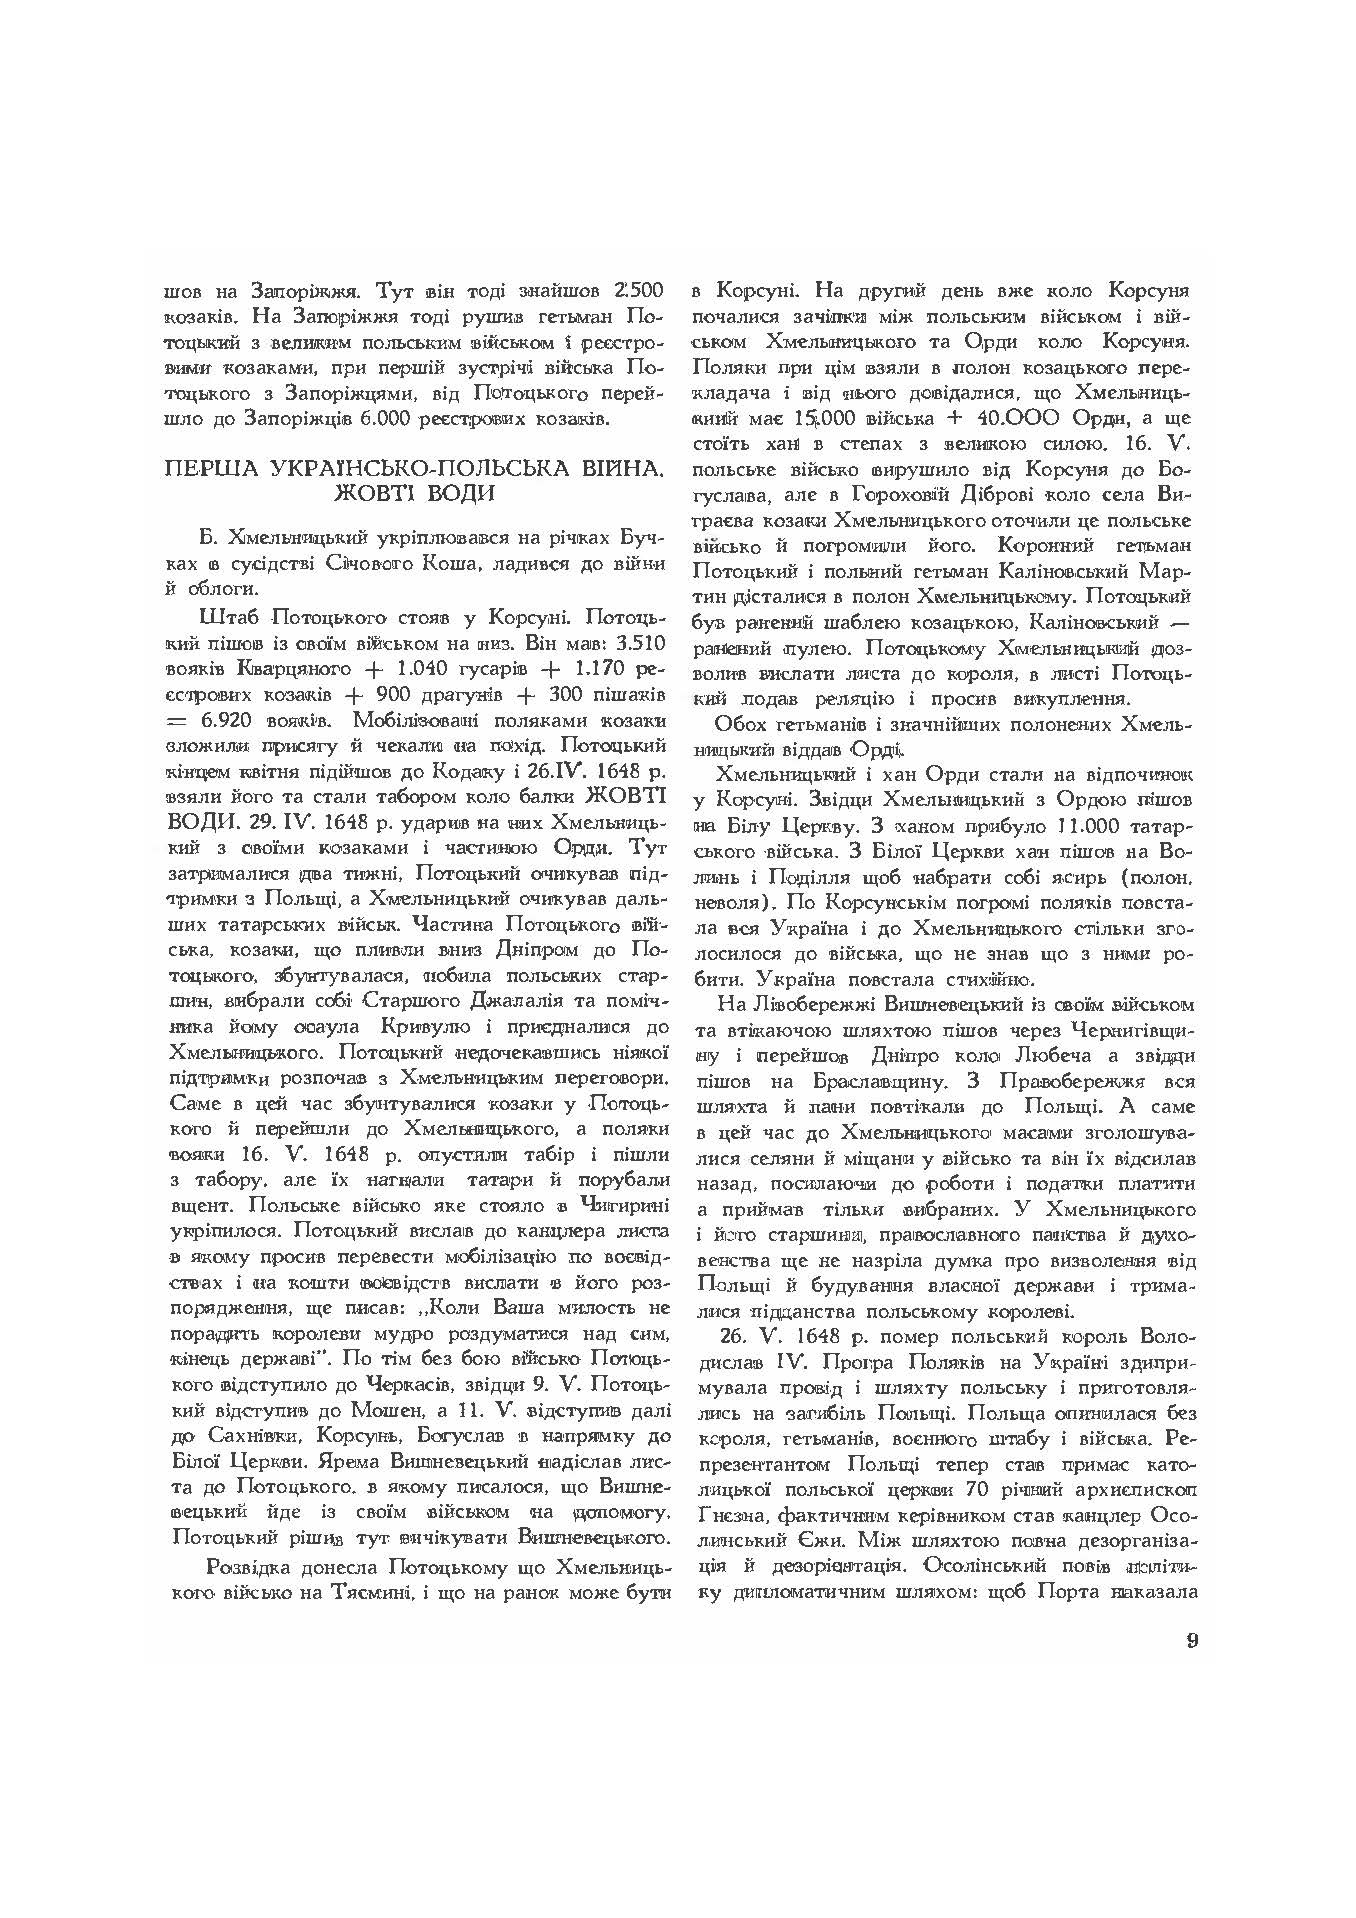 Руїна козацько-селянської України в 1648-1764-1802 роках (збільш. формат). Автор — Зеркаль Сава. 